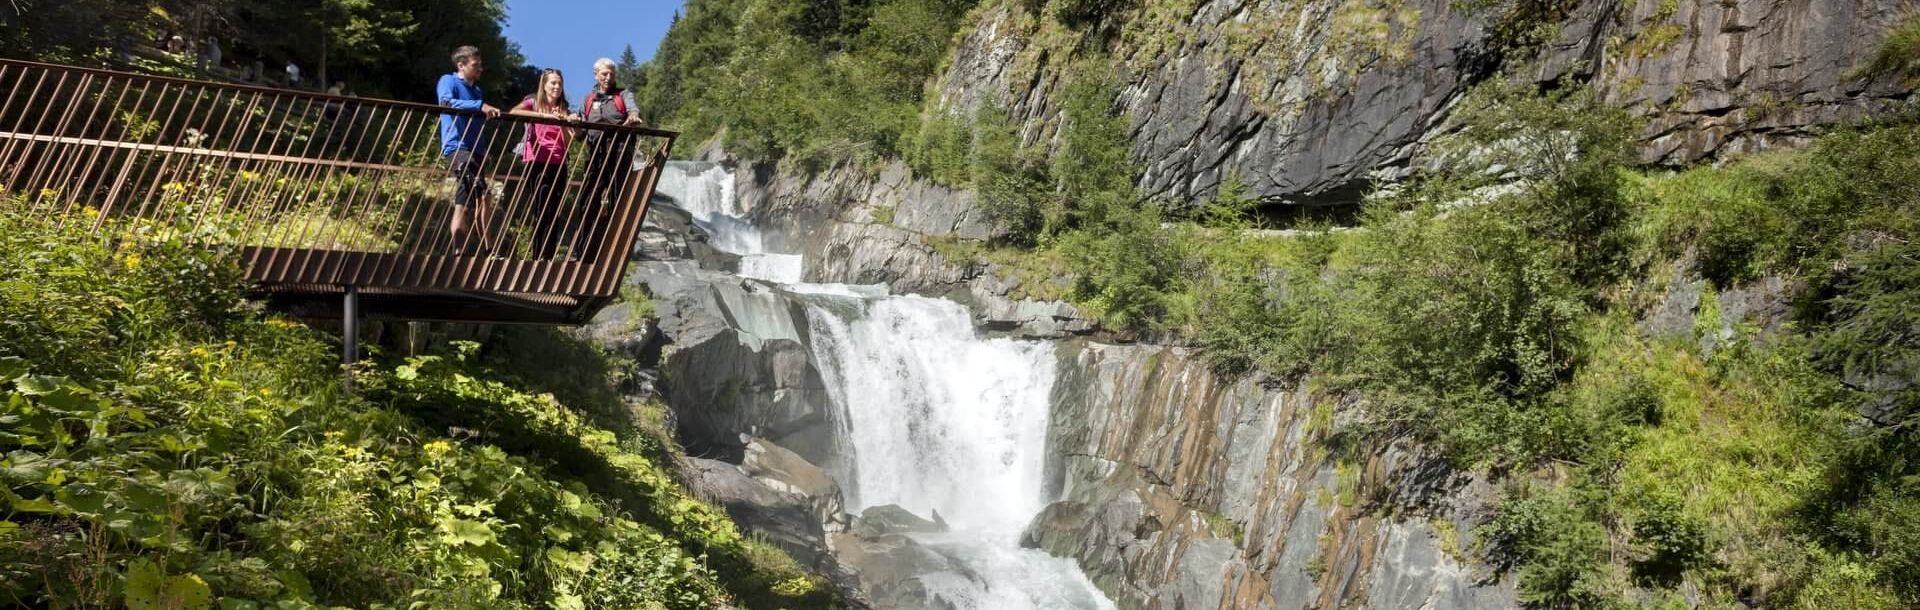 Der Iseltrail in Osttirol ist das perfekte Abenteuer für Naturliebhaber